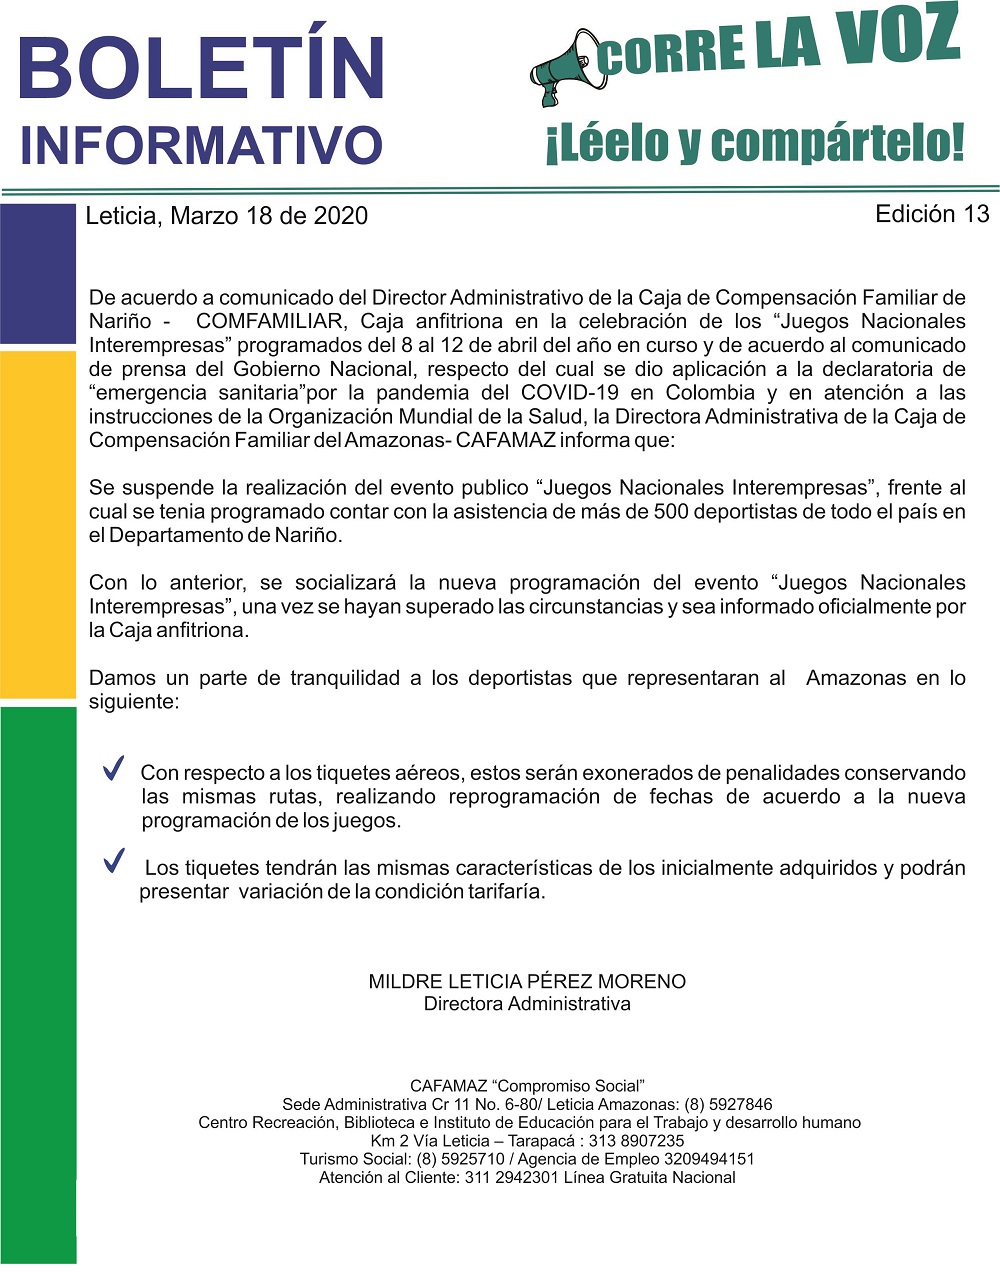 Boletín Informativo Edición 13 – Juegos Nacionales Interempresas SUSPENDIDOS | Cafamaz, 2020